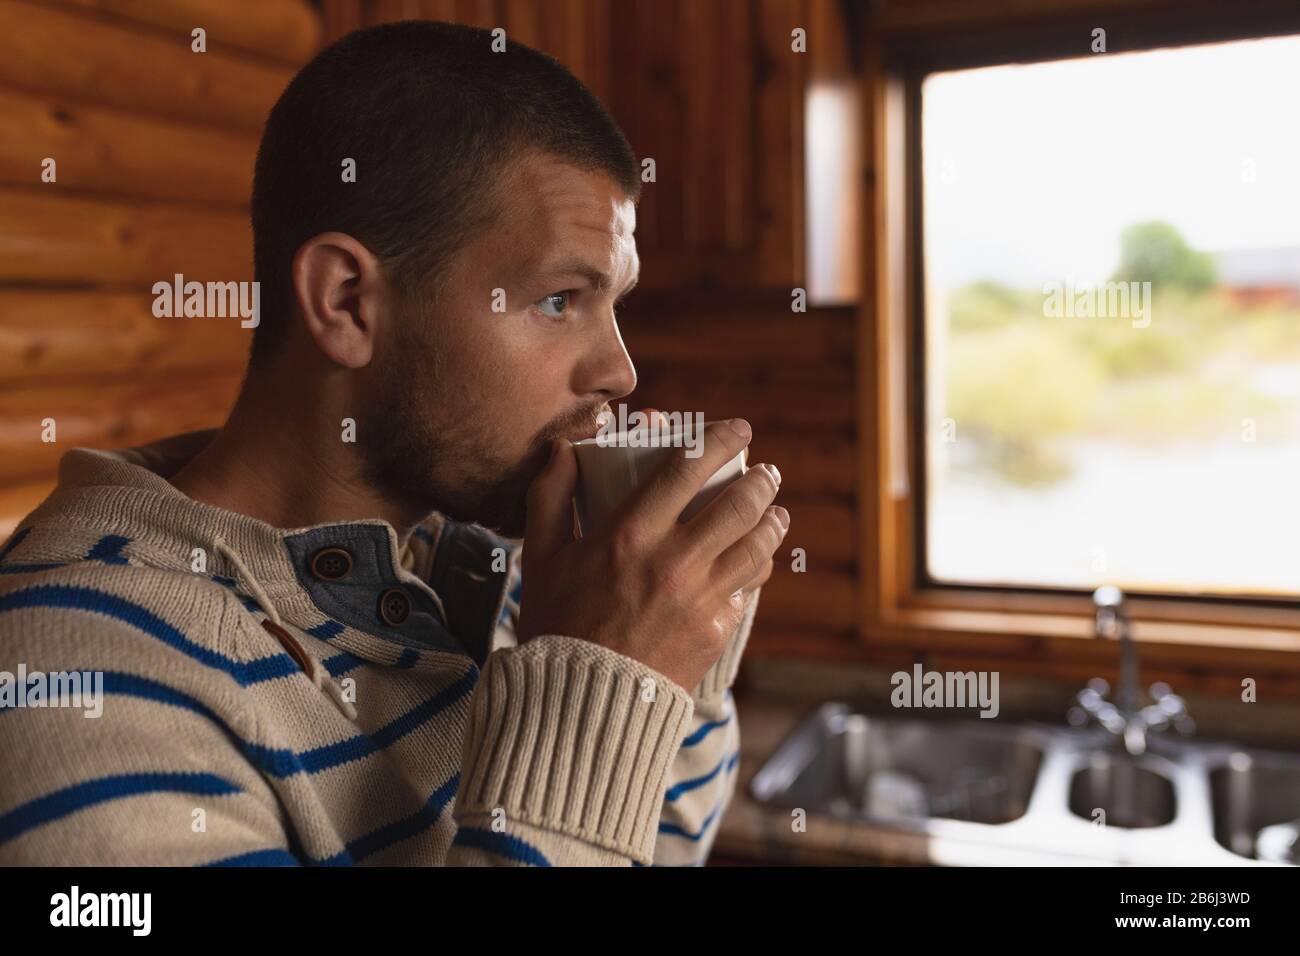 Homme caucasien buvant dans un mug chaud Banque D'Images